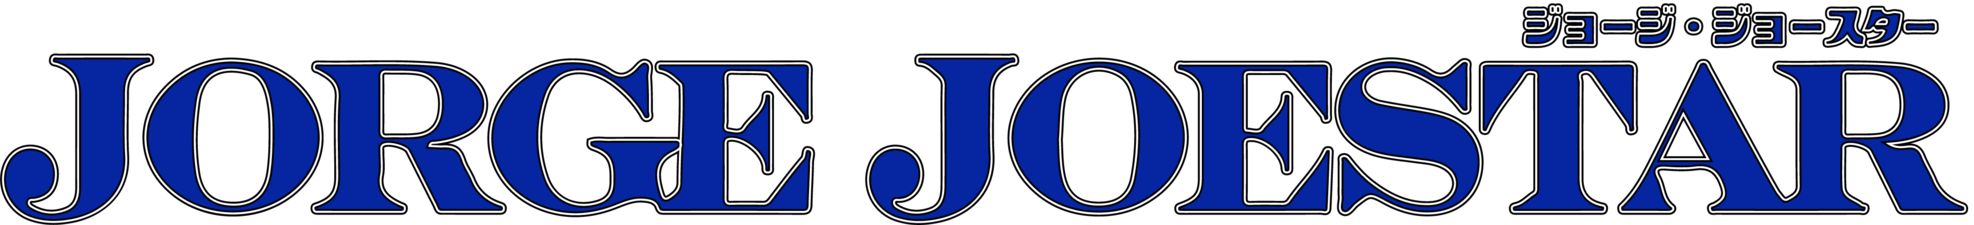 My JORGE JOESTAR logo